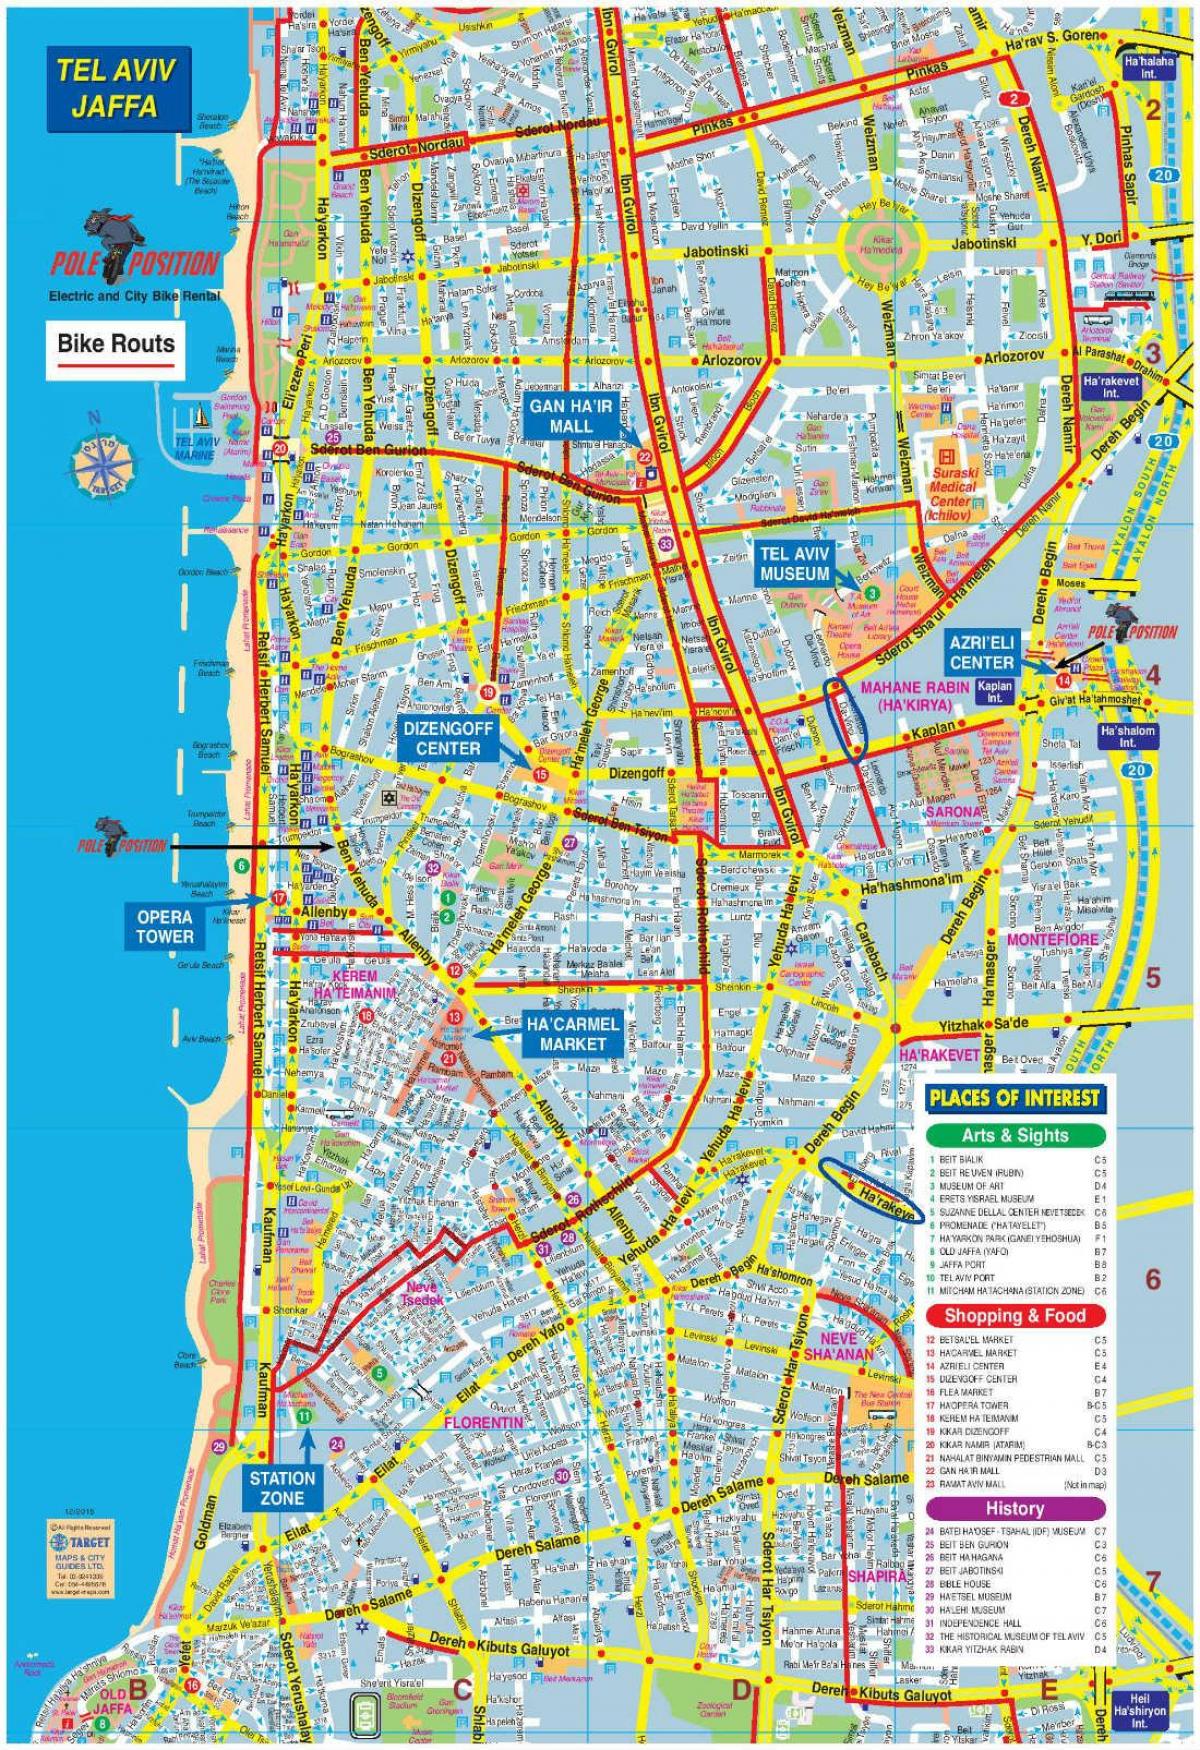 χάρτης του Τελ Αβίβ ποδήλατο